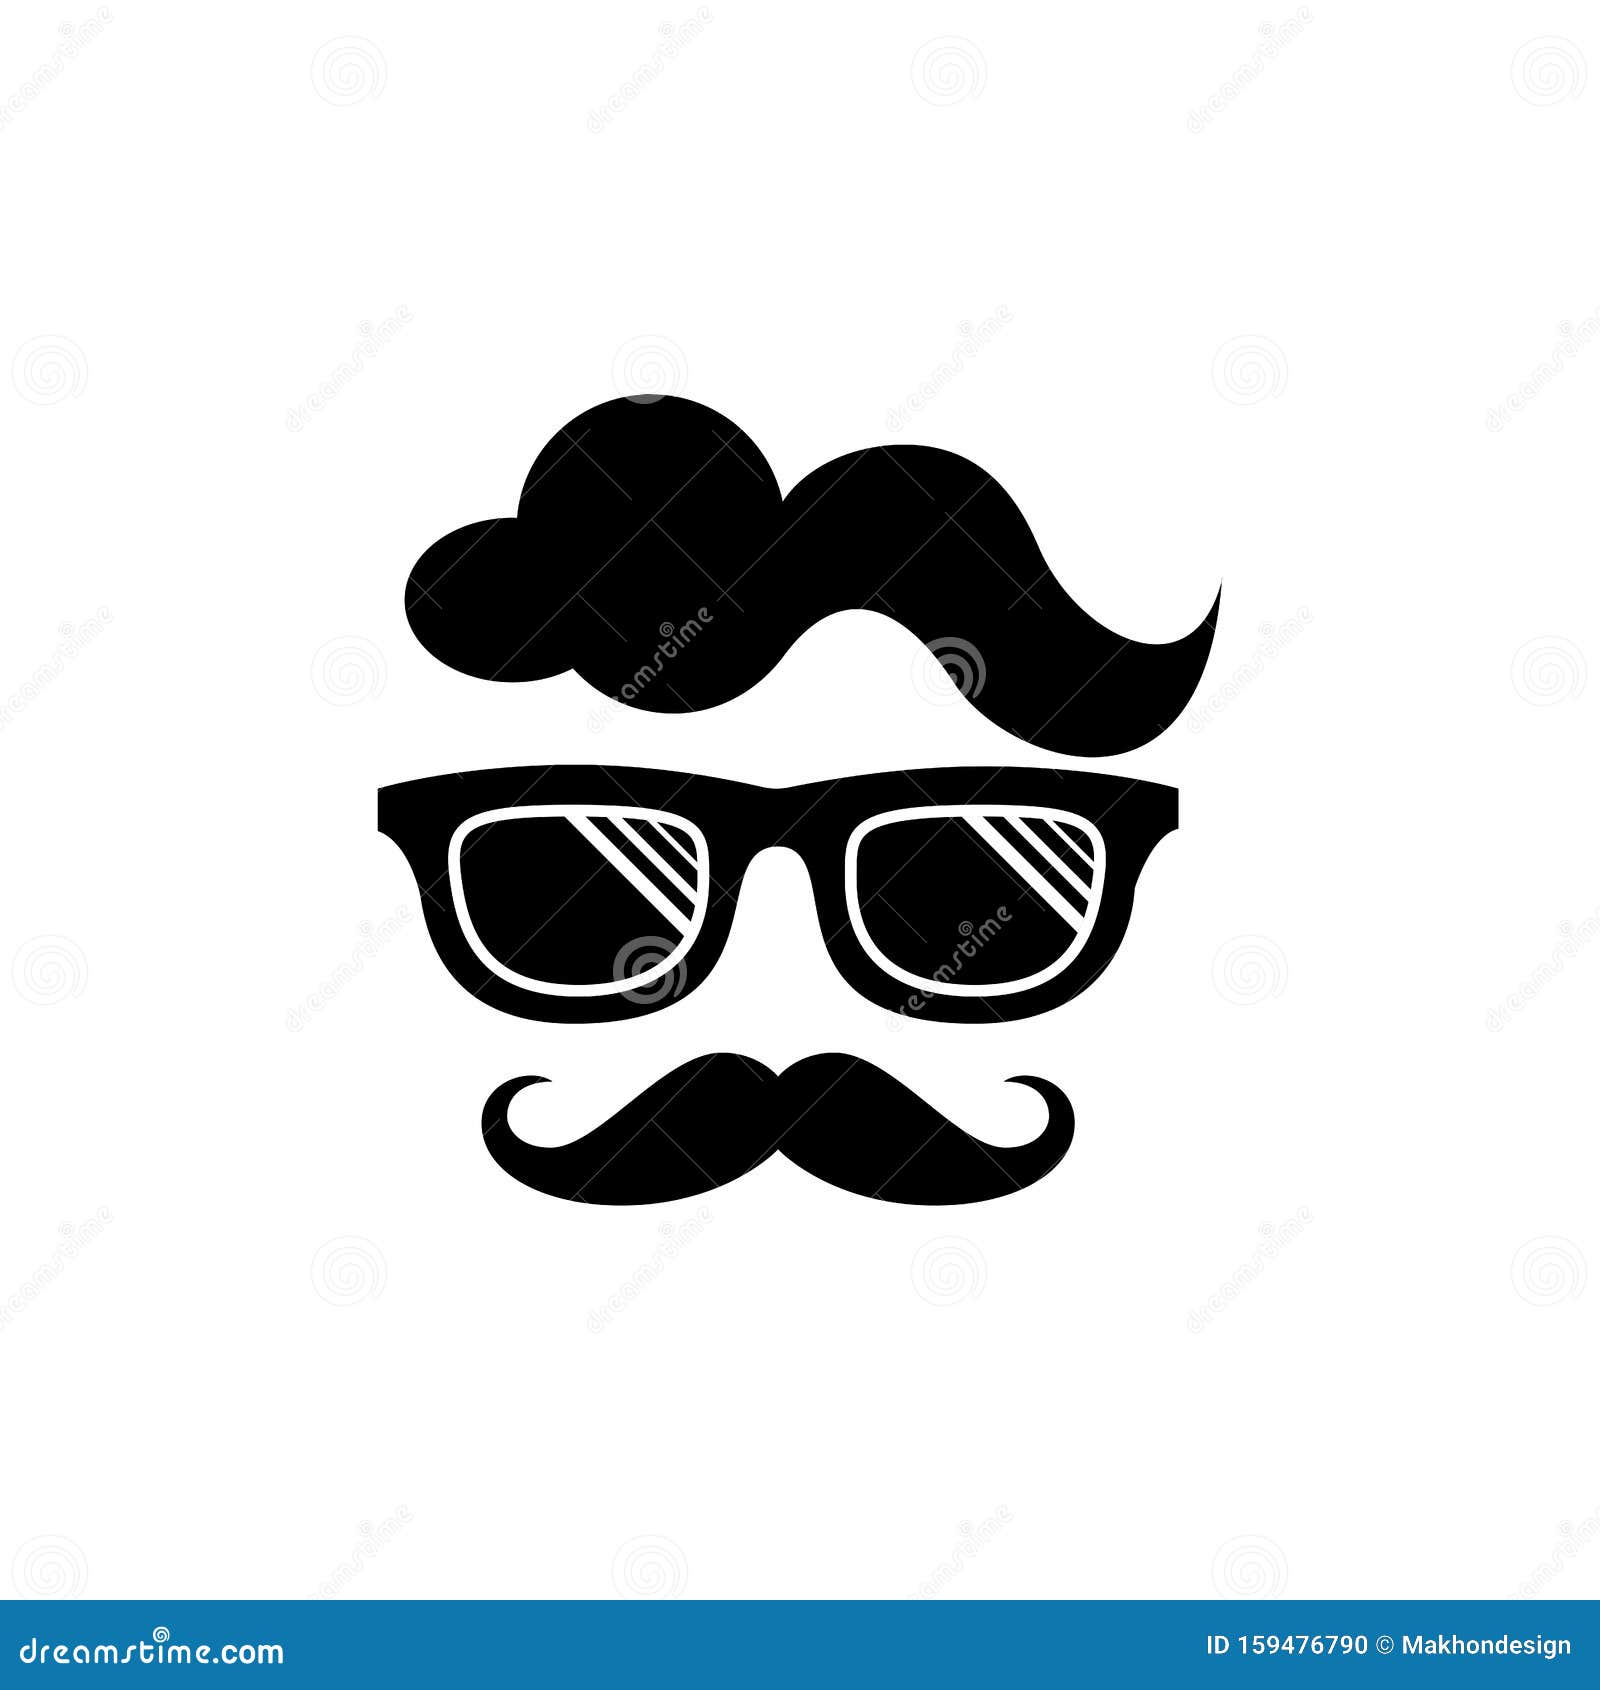 Download Cool Geek Guy Nerd Vector Logo Design Stock Vector - Illustration of design, science: 159476790